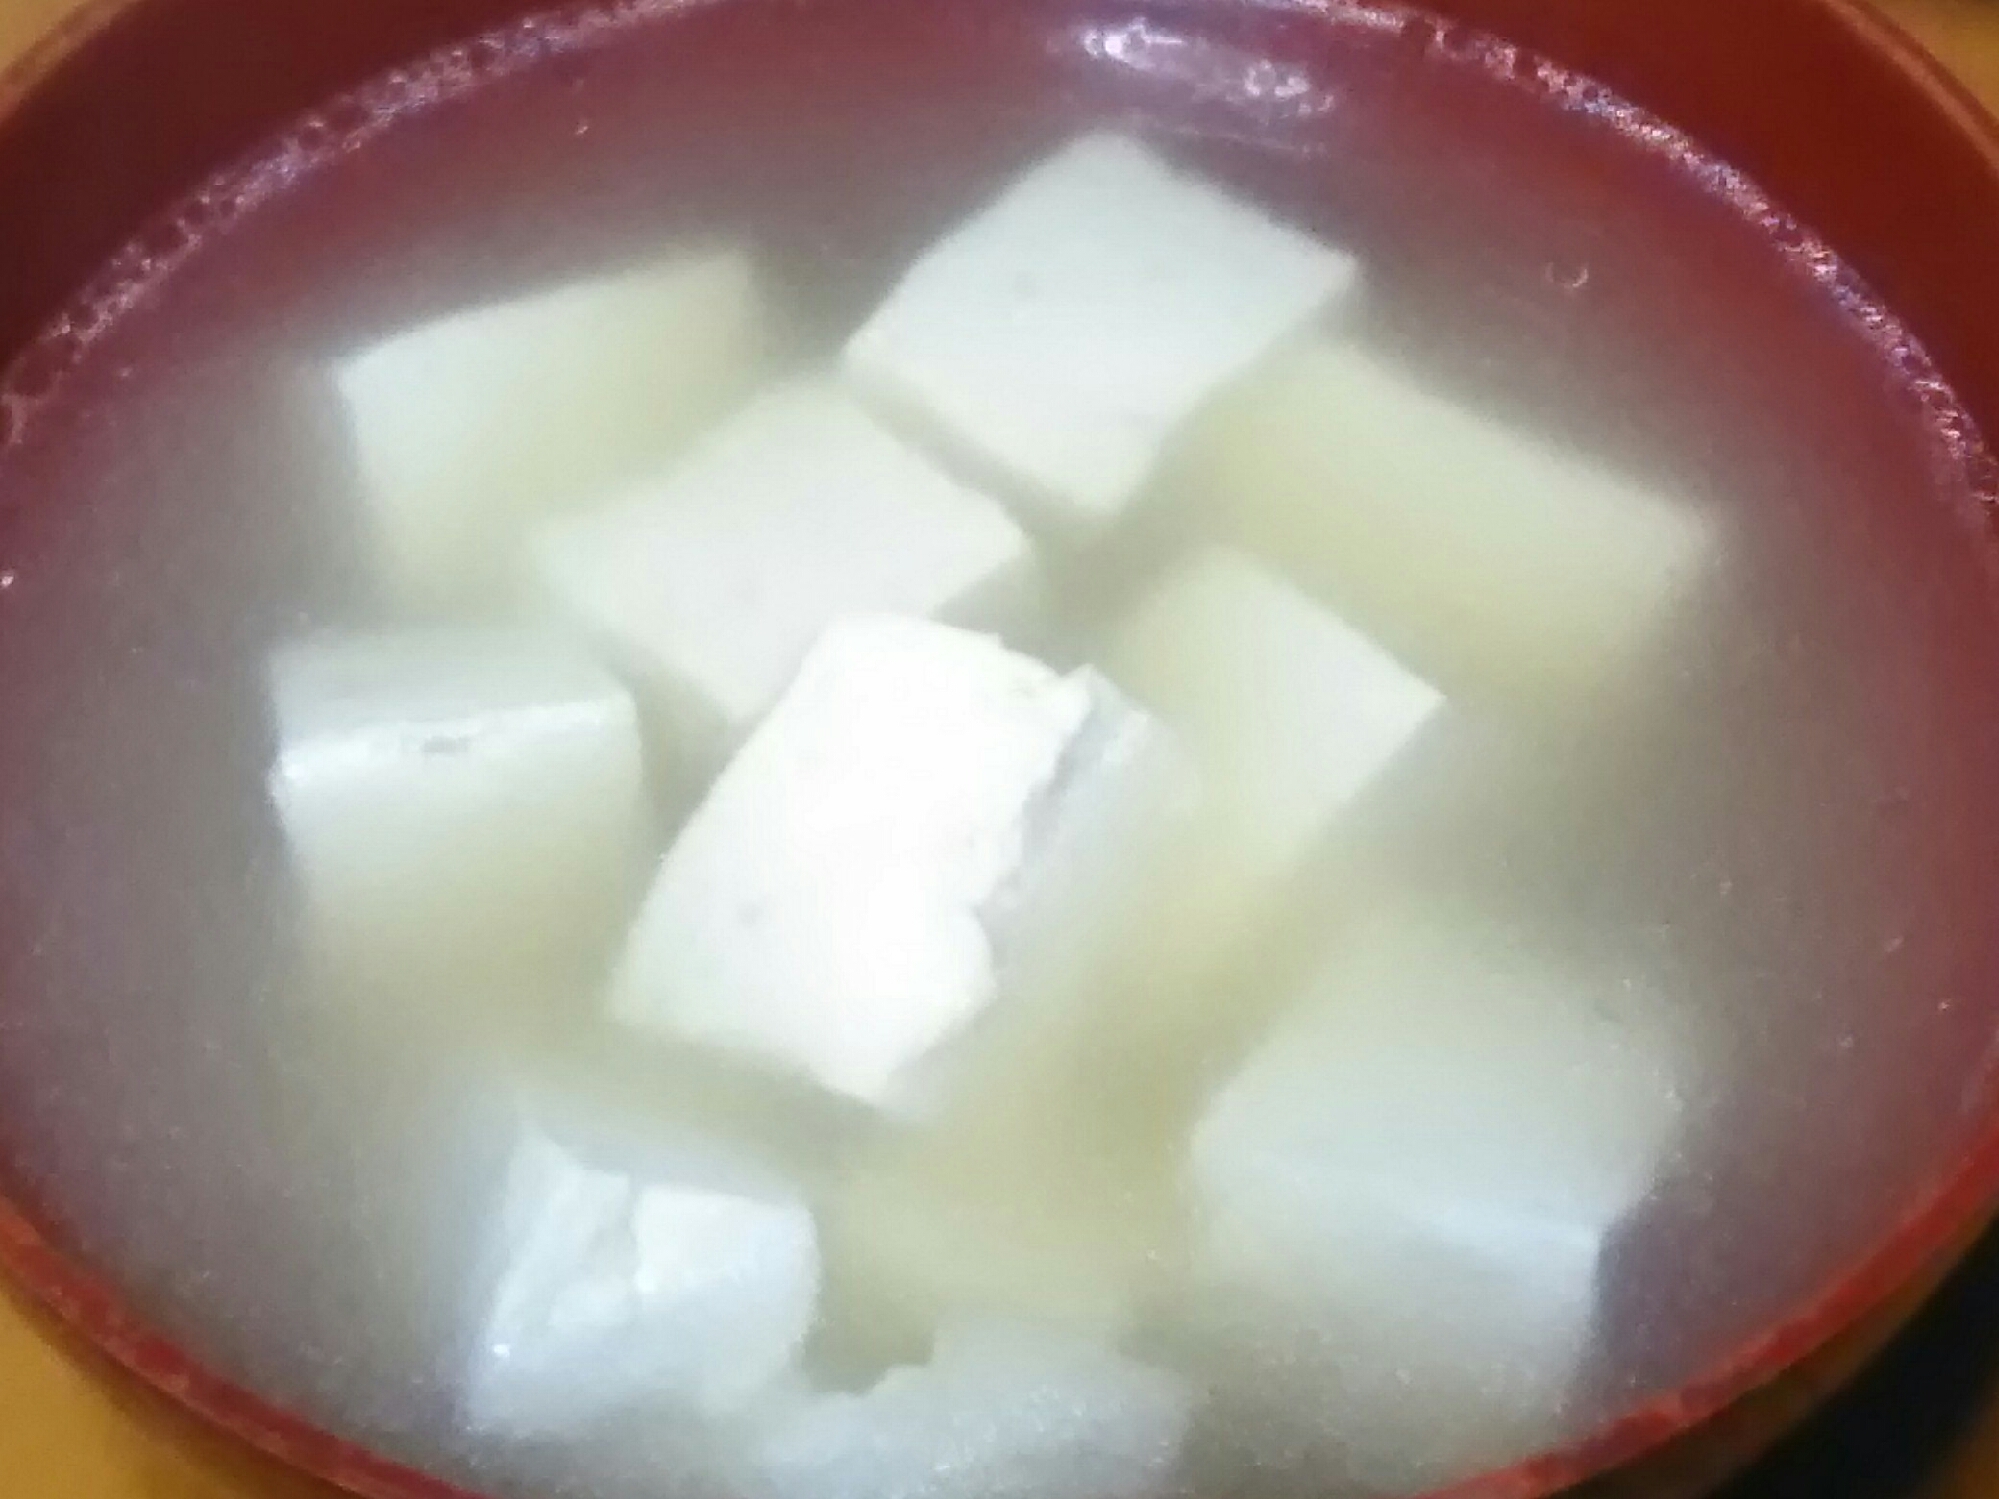 豆腐と石突きの味噌汁